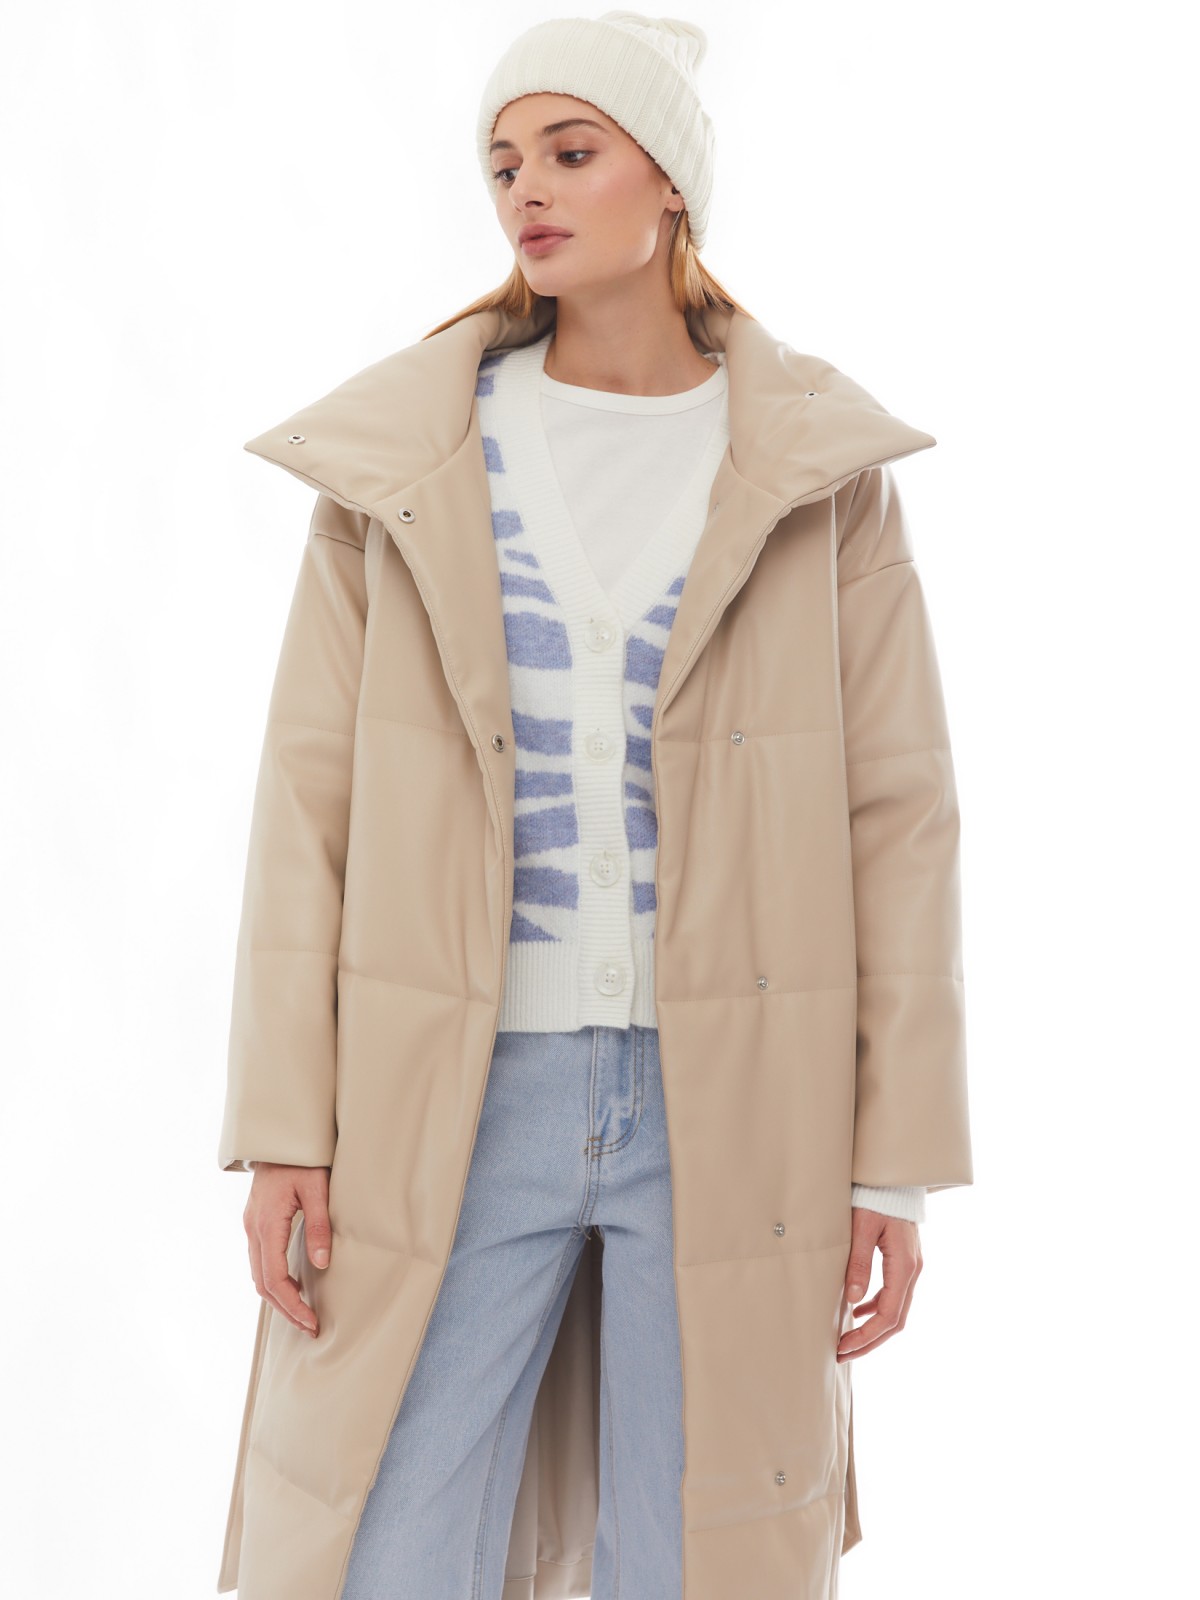 Тёплое пальто из экокожи на синтепоне с воротником-стойкой и поясом zolla 02412522N034, цвет бежевый, размер XS